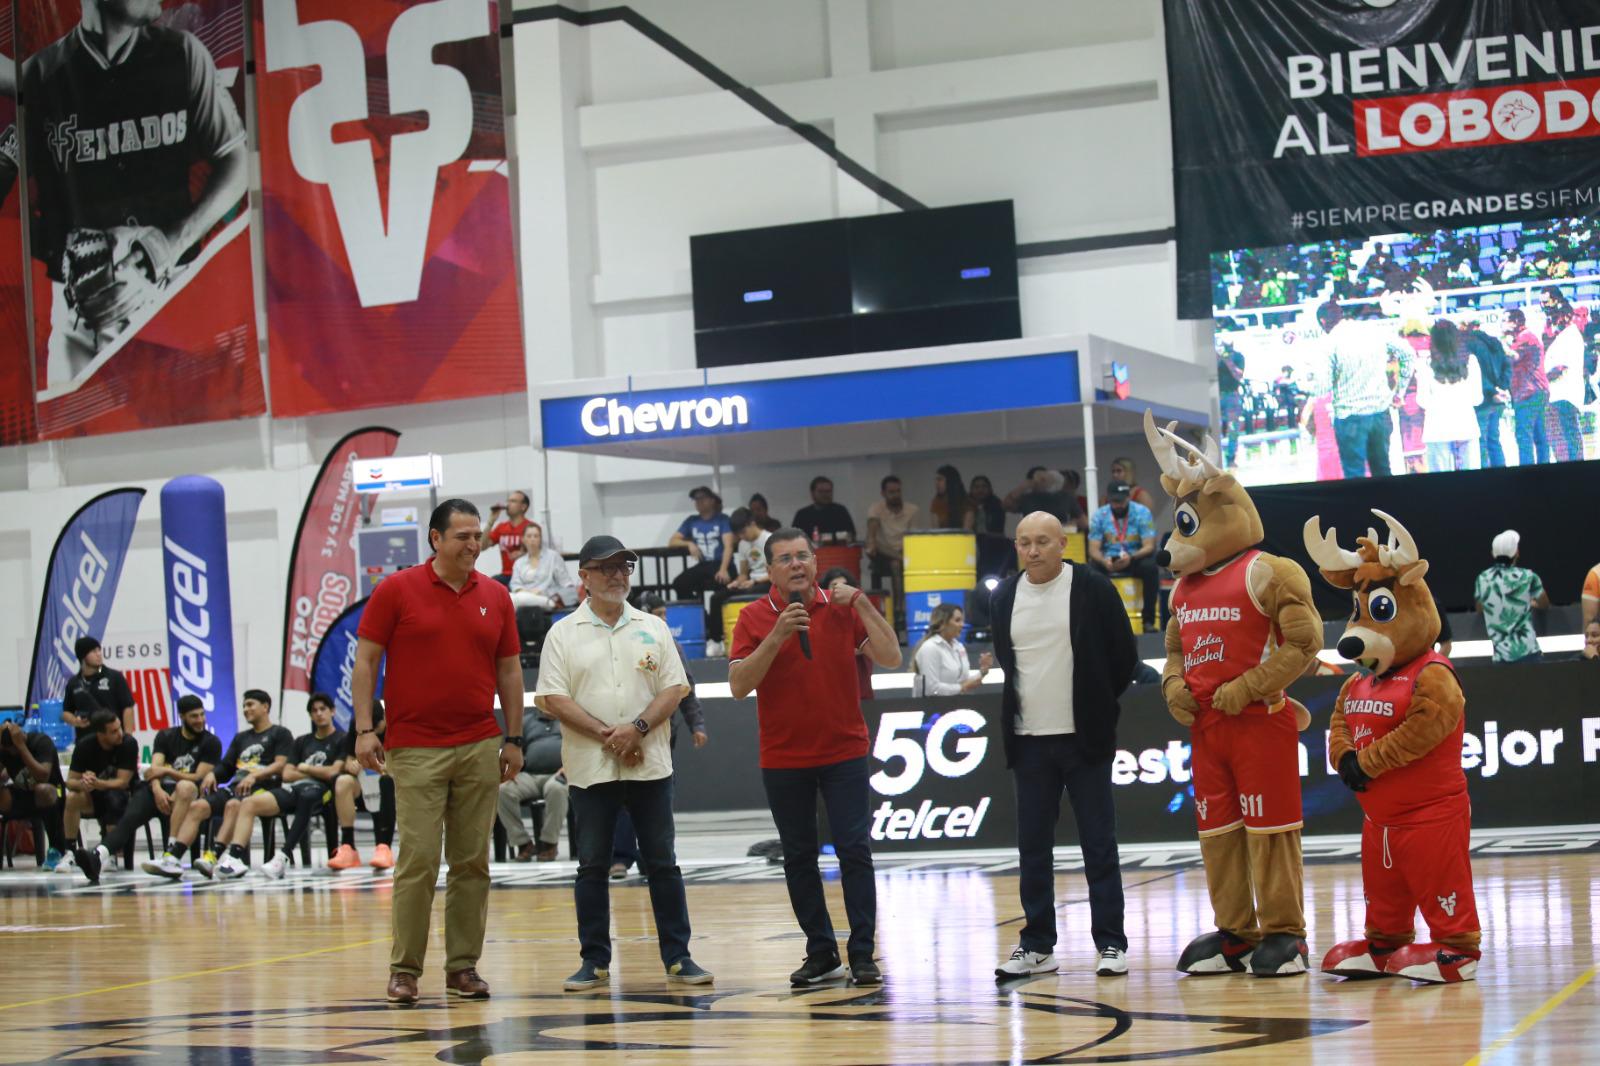 $!Inaugura Venados Basketball nueva temporada del Cibacopa